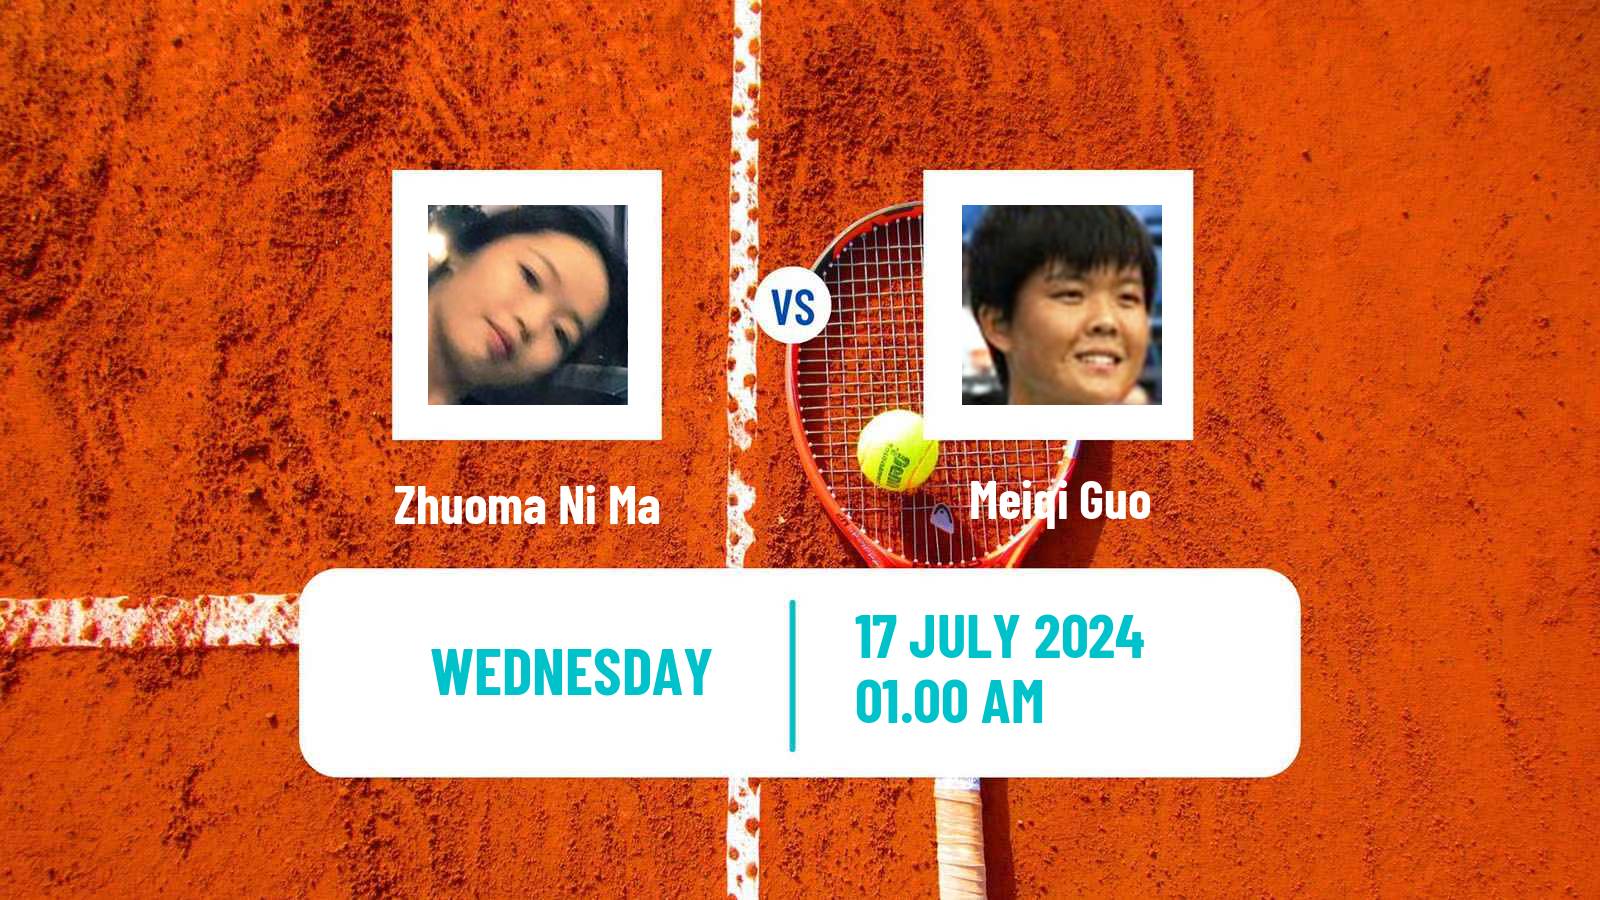 Tennis ITF W35 Tianjin 2 Women Zhuoma Ni Ma - Meiqi Guo